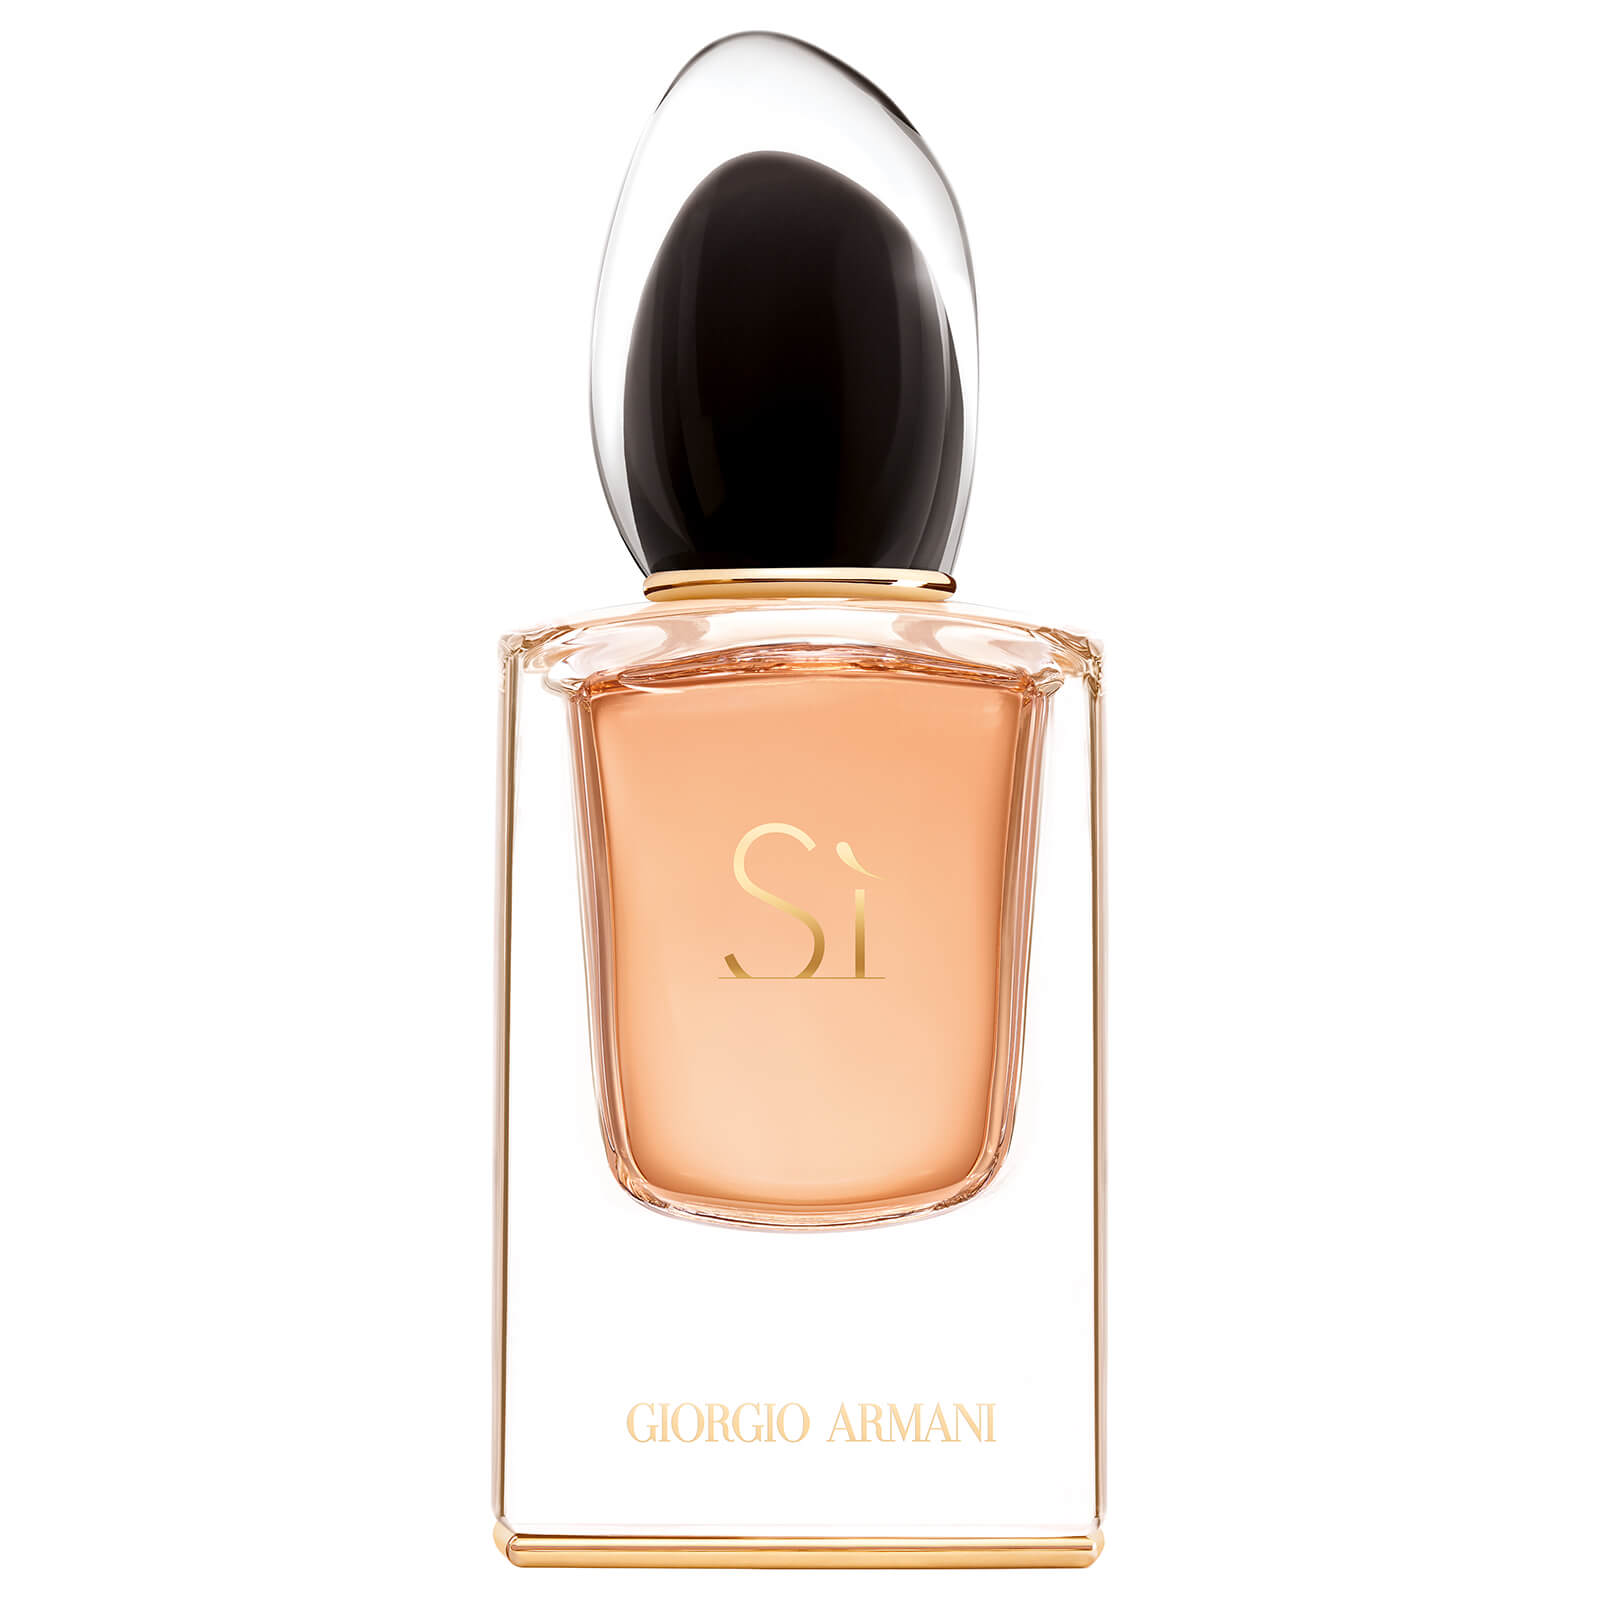 Armani SI Le Parfum 40ml | Free 